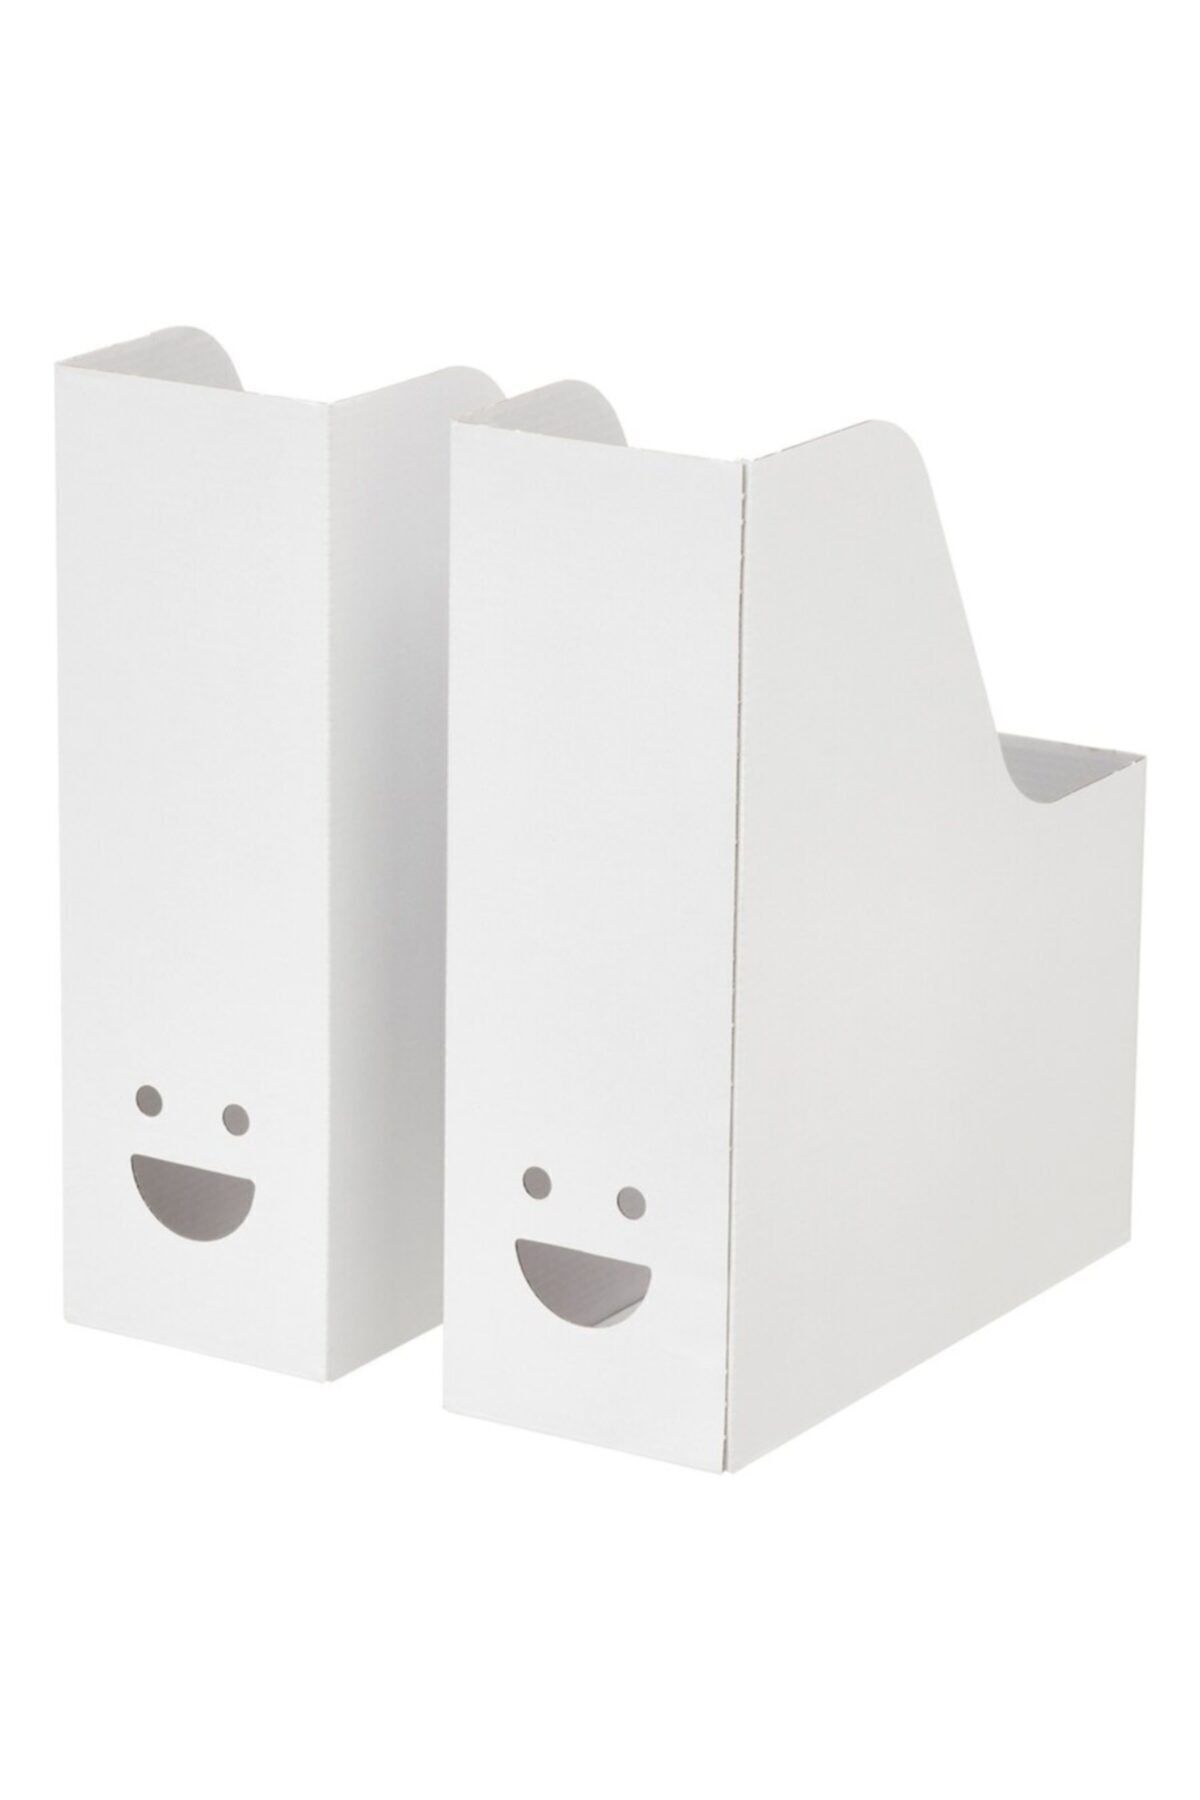 IKEA Tjabba Gülen Yüz 2 Li Set Beyaz Kutu Klasör Dosyalık Magazinlik Evrak Dergi Dosyası